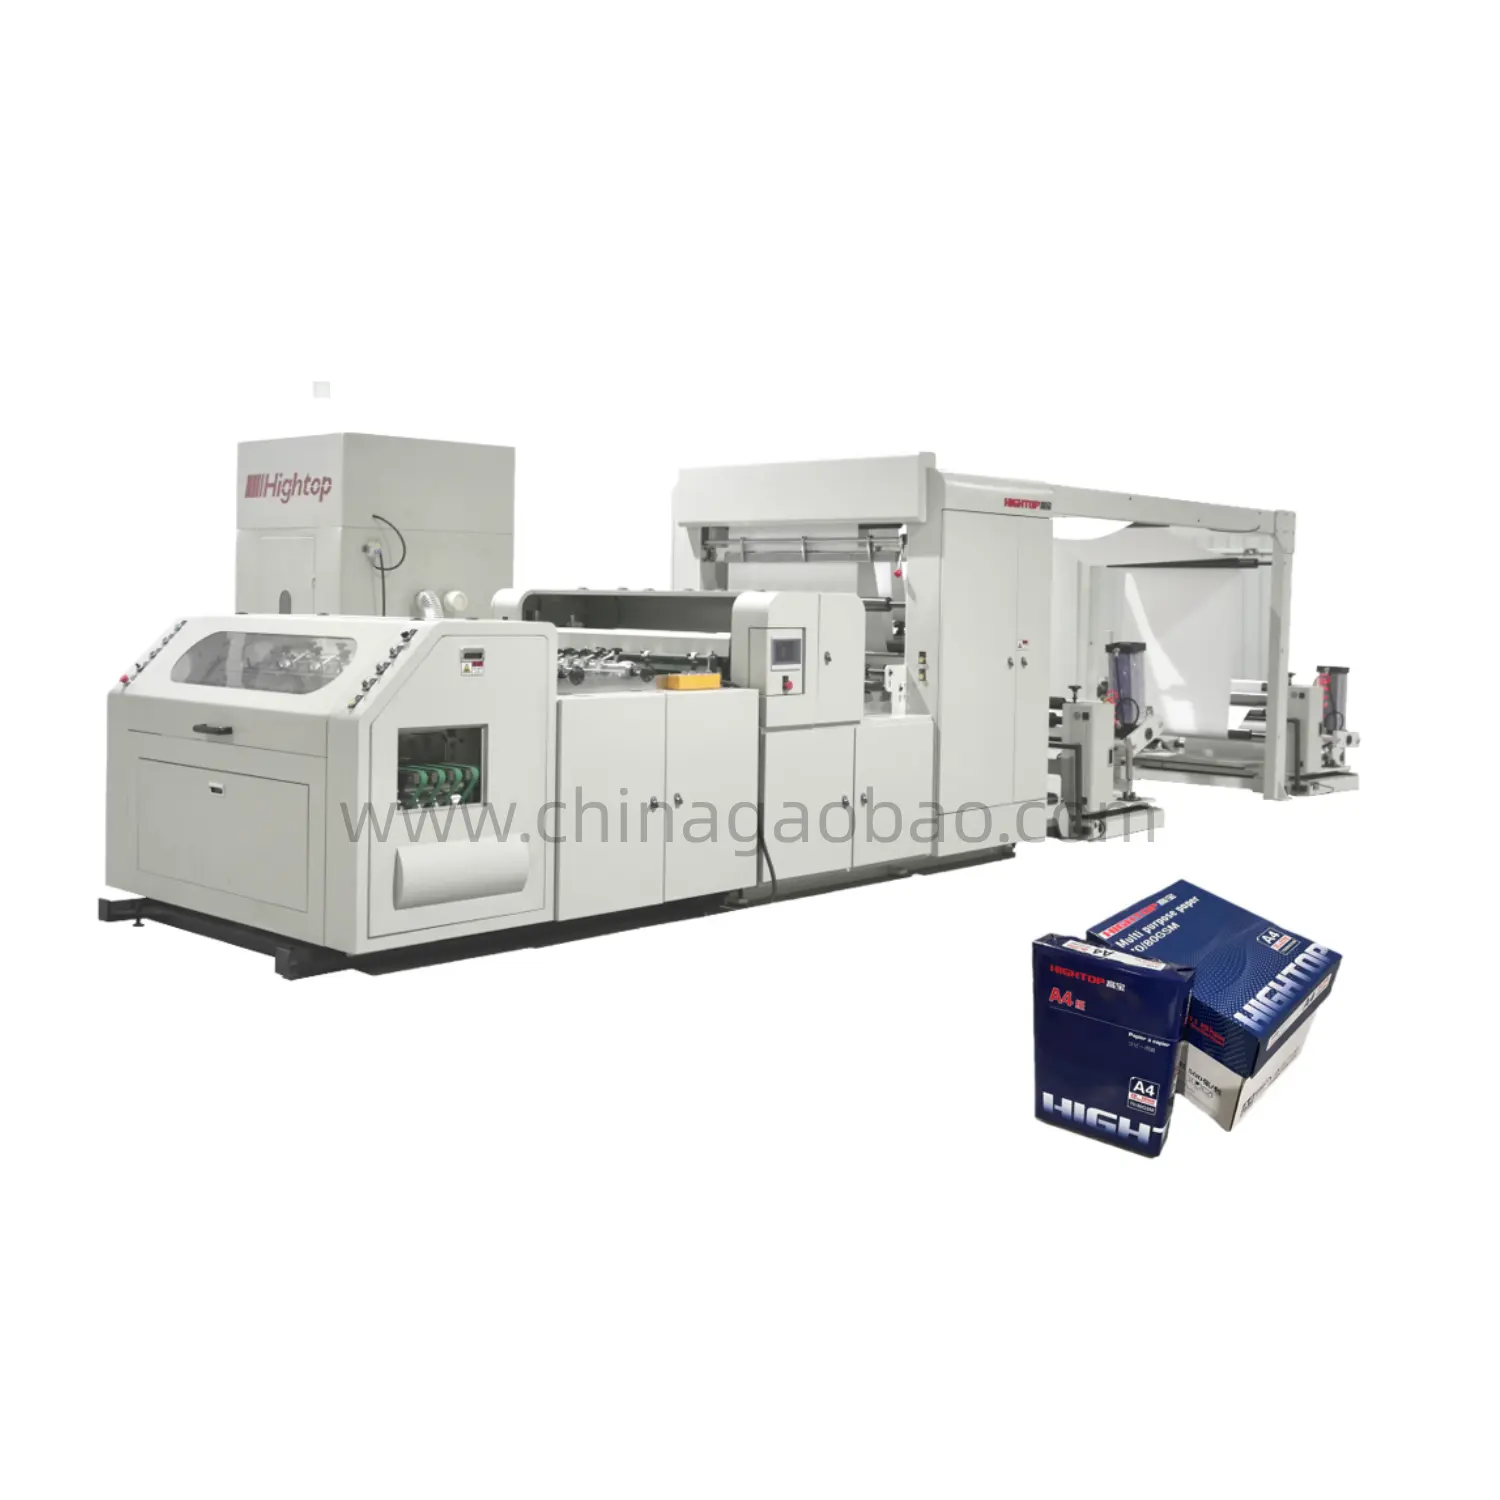 HQJ-A4 macchina automatica per la produzione di carta A4/A3 con macchina imballatrice automatica per risme di carta A4 due rotoli che alimentano la produzione di carta per fotocopie